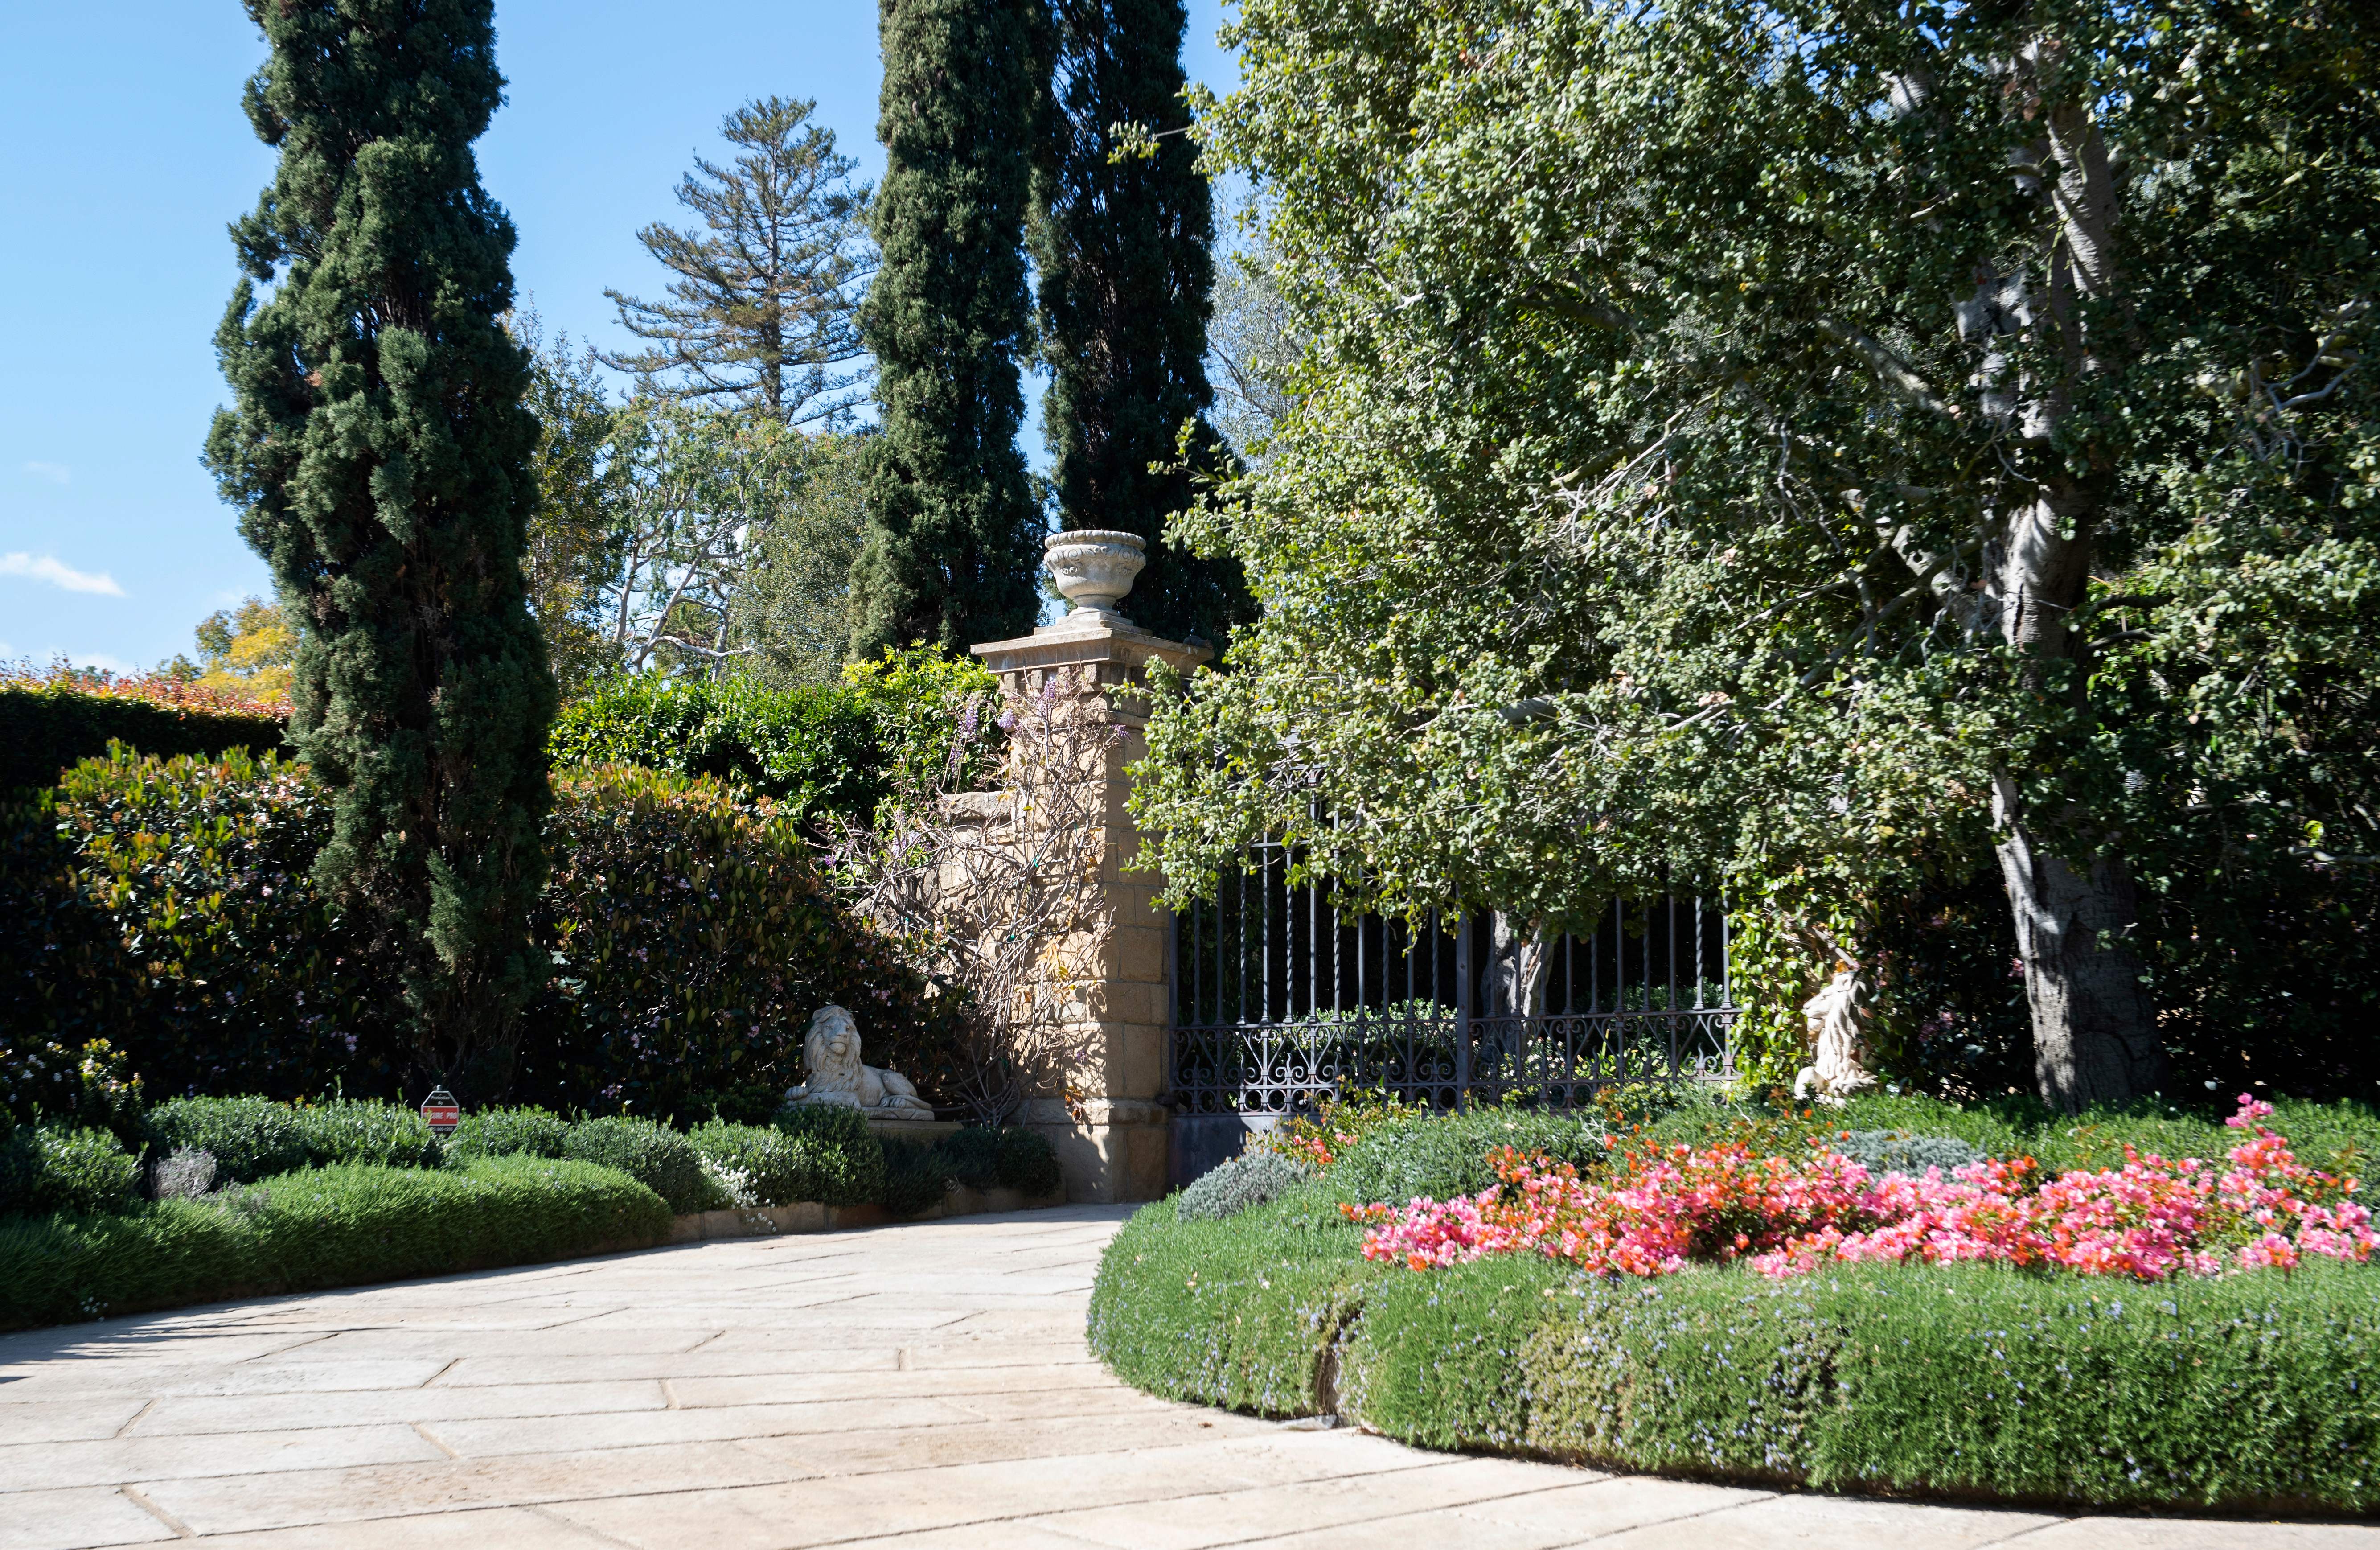 La puerta principal de la finca de Montecito, California, donde viven el príncipe Harry y Meghan Markle, 2021. | Foto: Getty Images